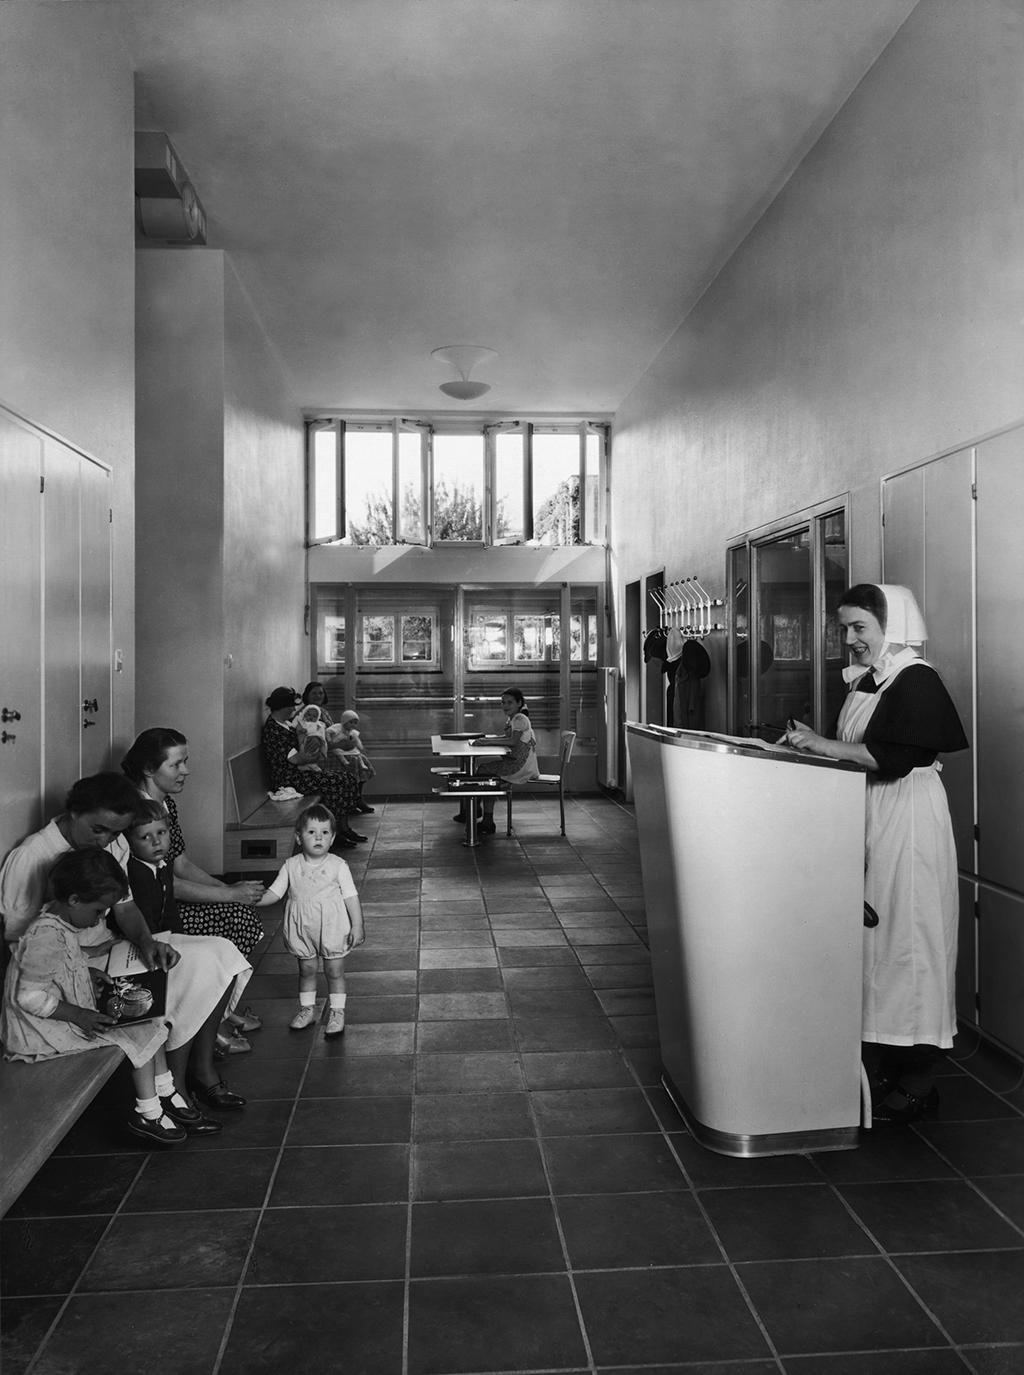 مدخل فضاء مخصص للانتظار والأطفال والنساء يجلسون إلى اليسار، على اليمين تُرى امرأة ترتدي زي ممرضة.